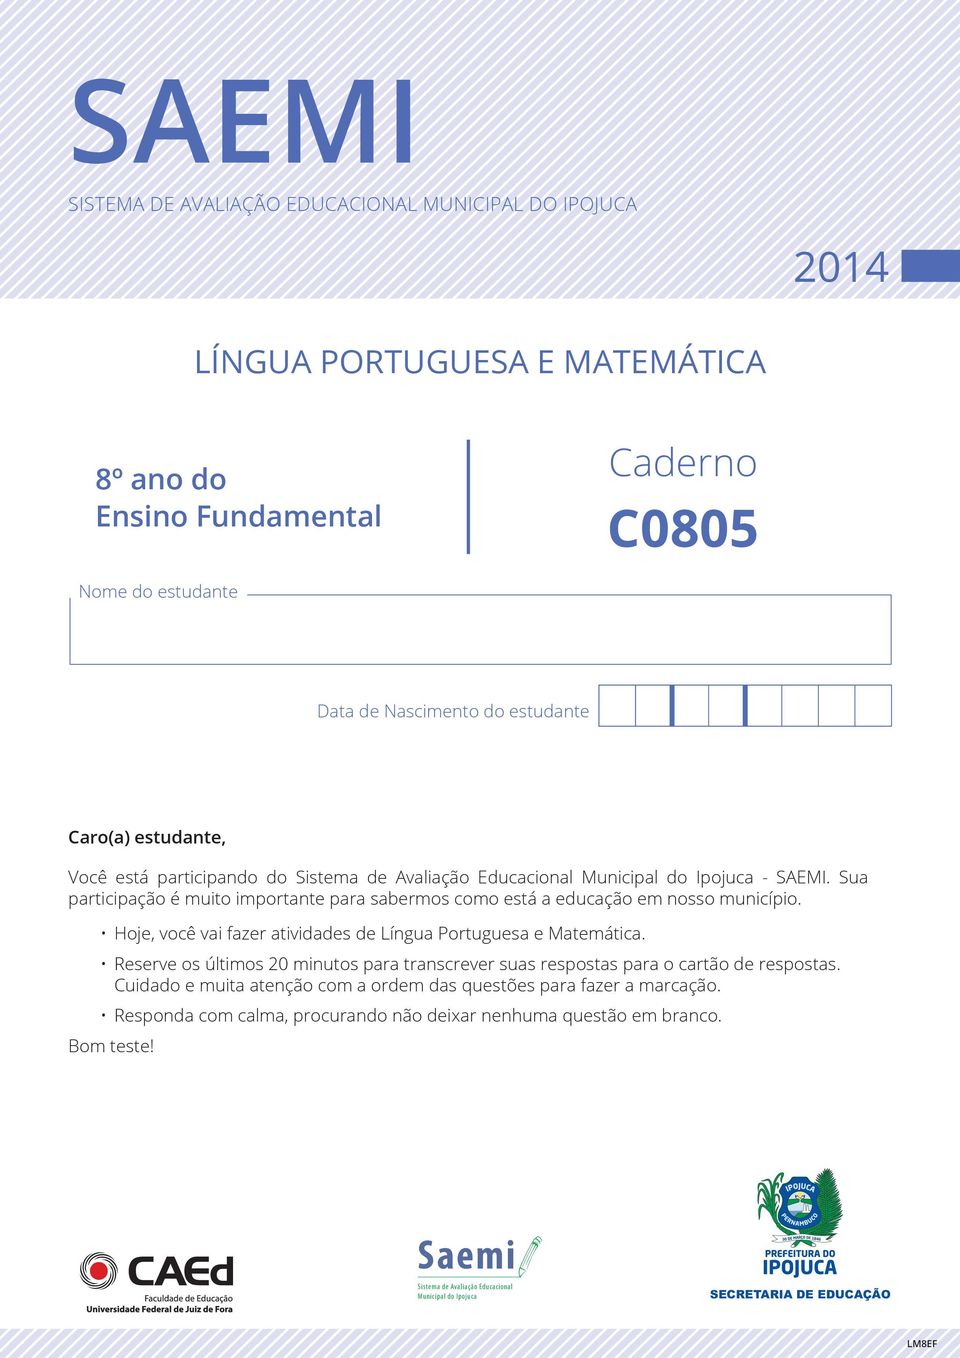 Hoje, você vai fazer atividades de Língua Portuguesa e Matemática. Reserve os últimos 20 minutos para transcrever suas respostas para o cartão de respostas.